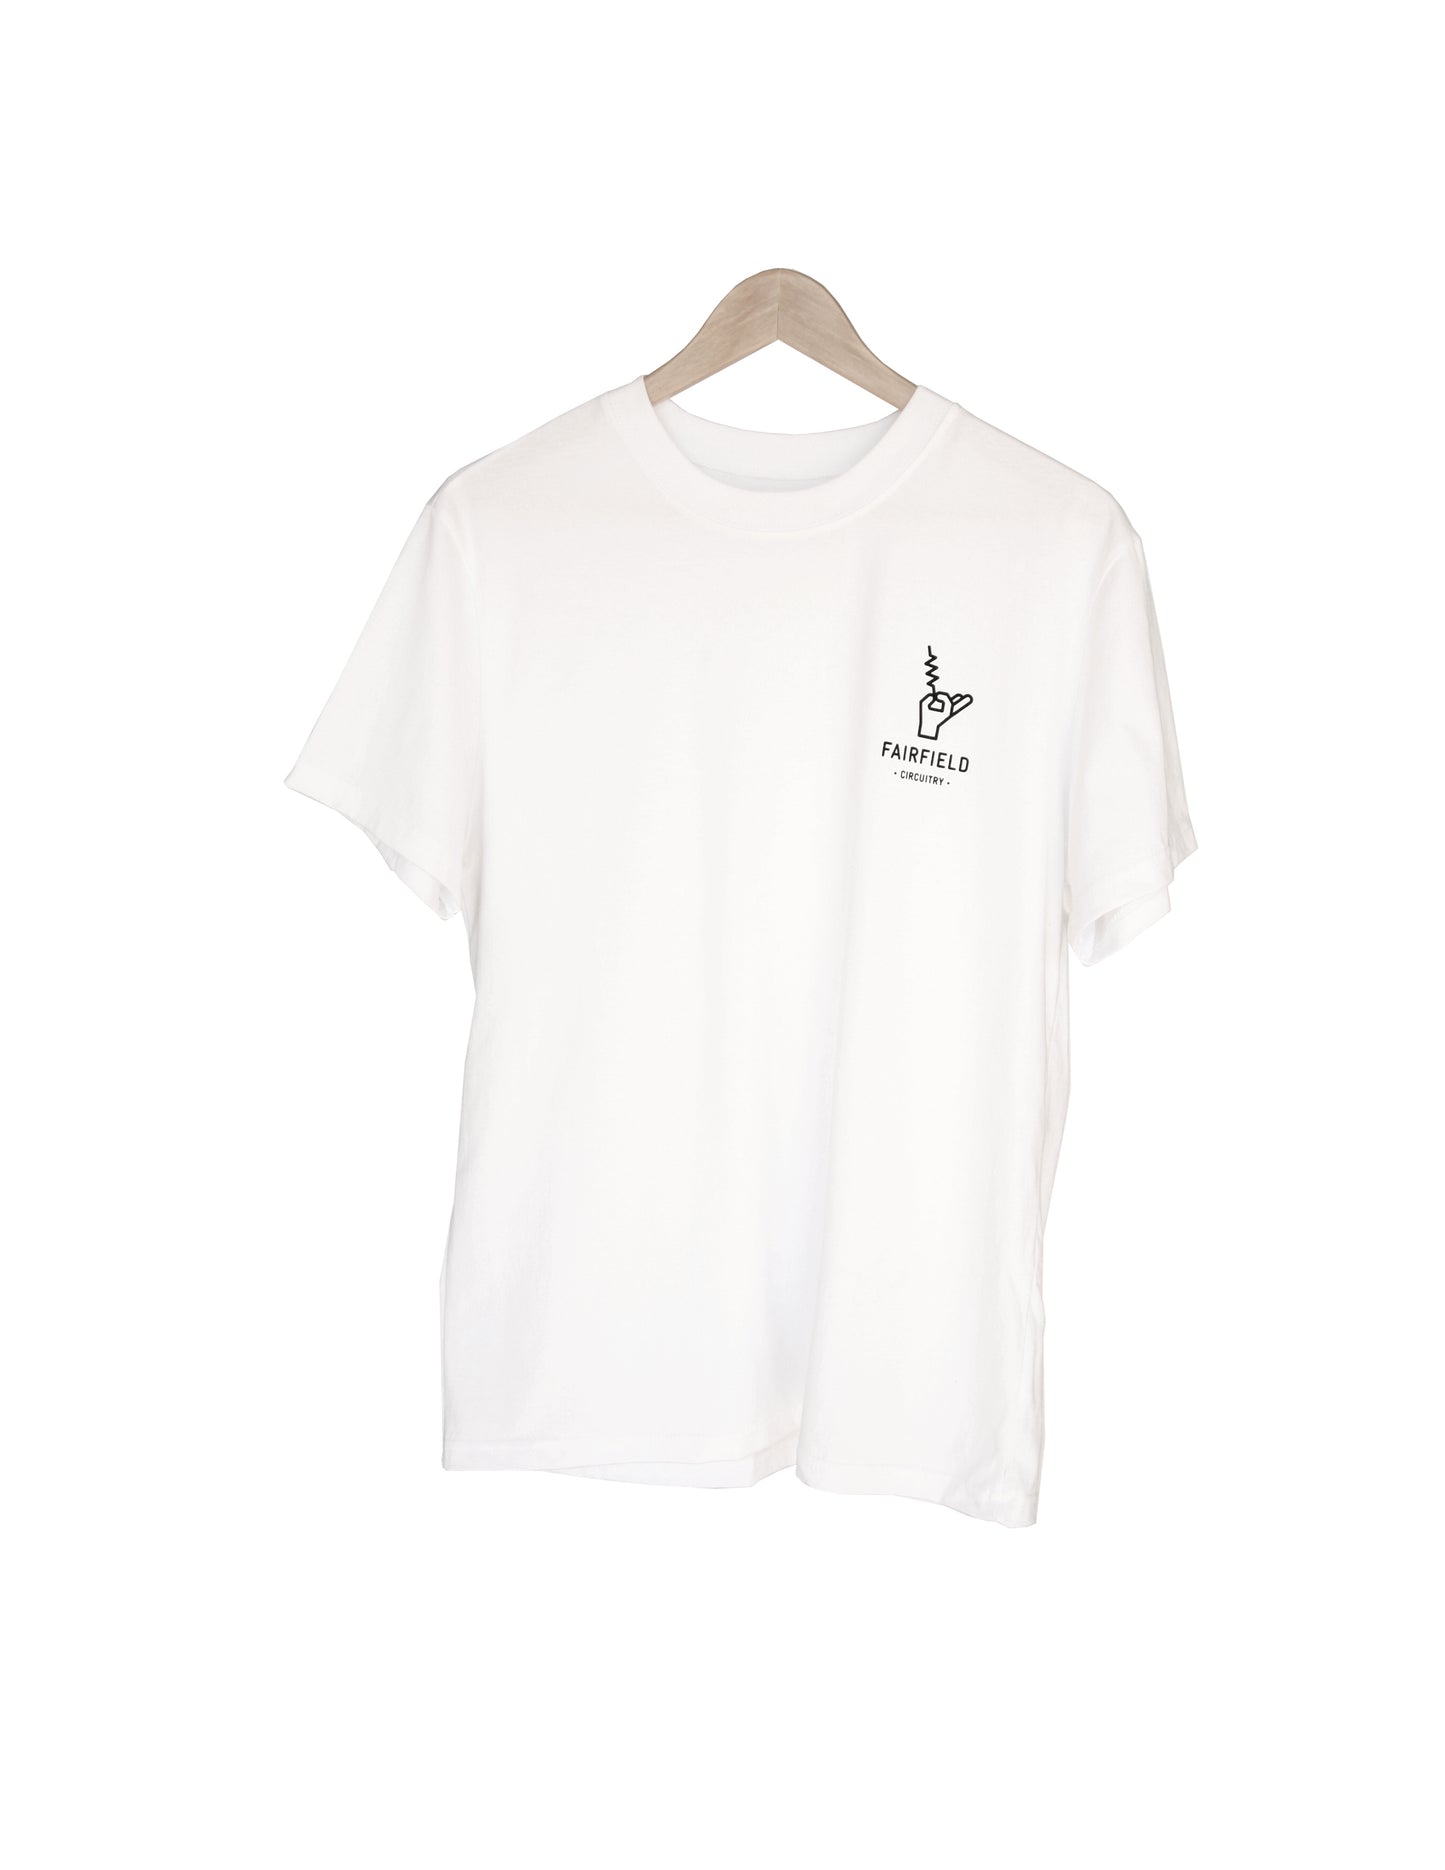 T-shirt blanc - Logo noir